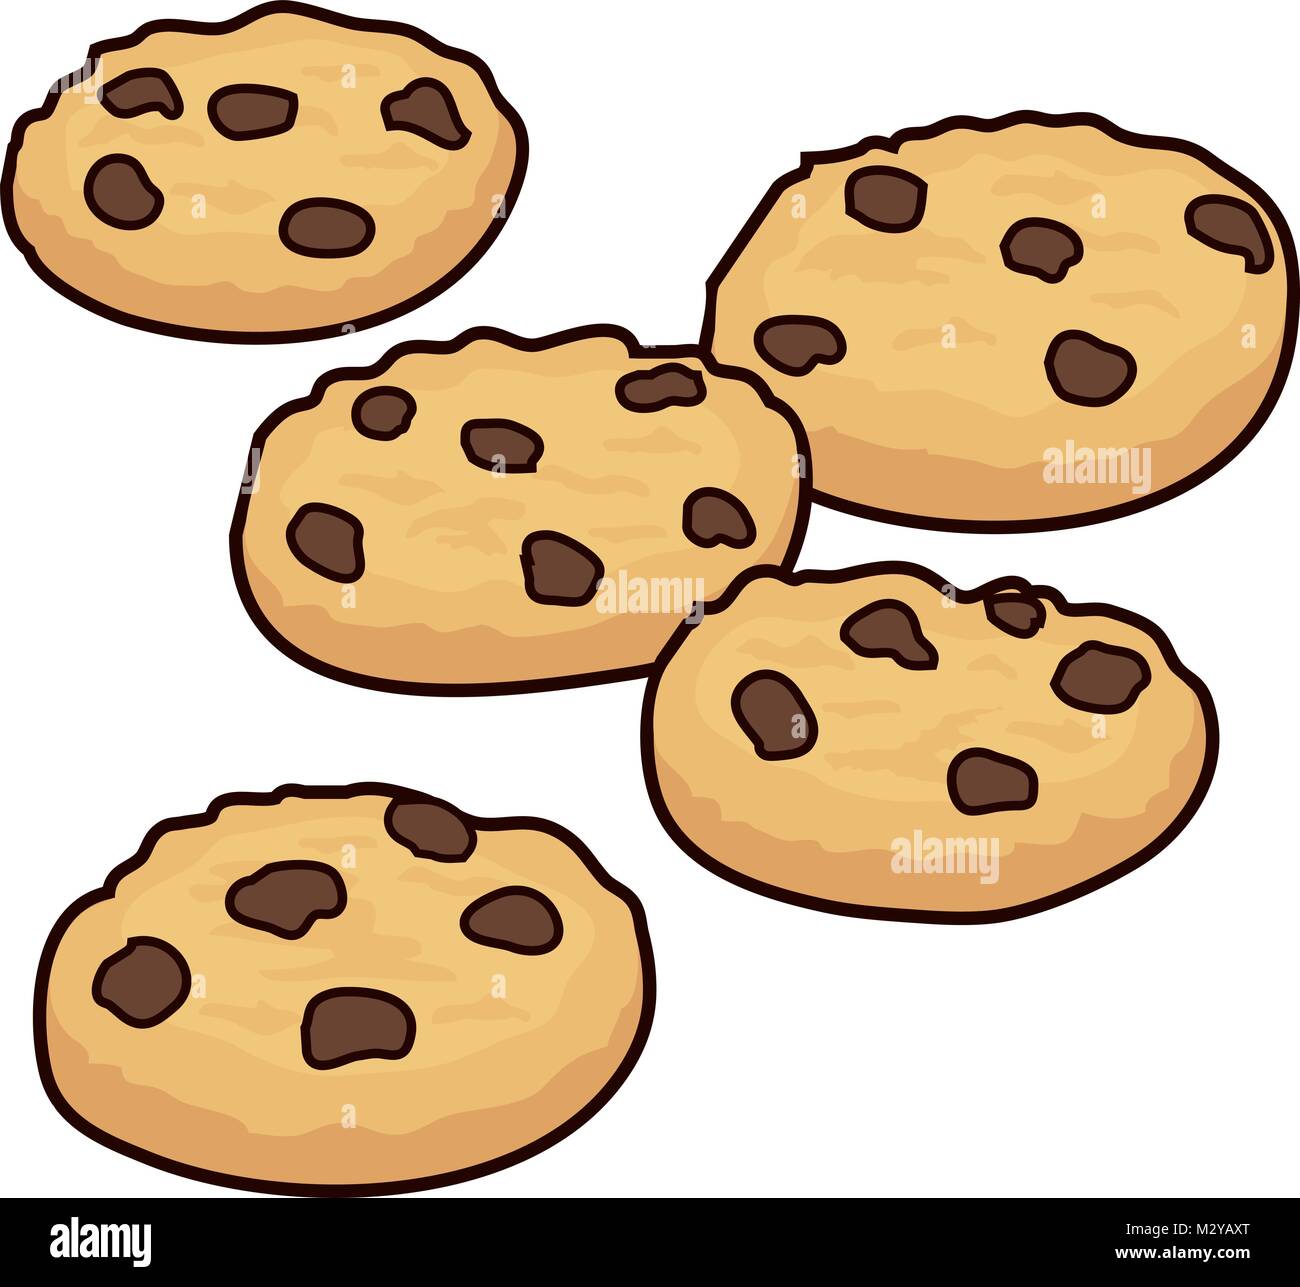 clipart baking cookies